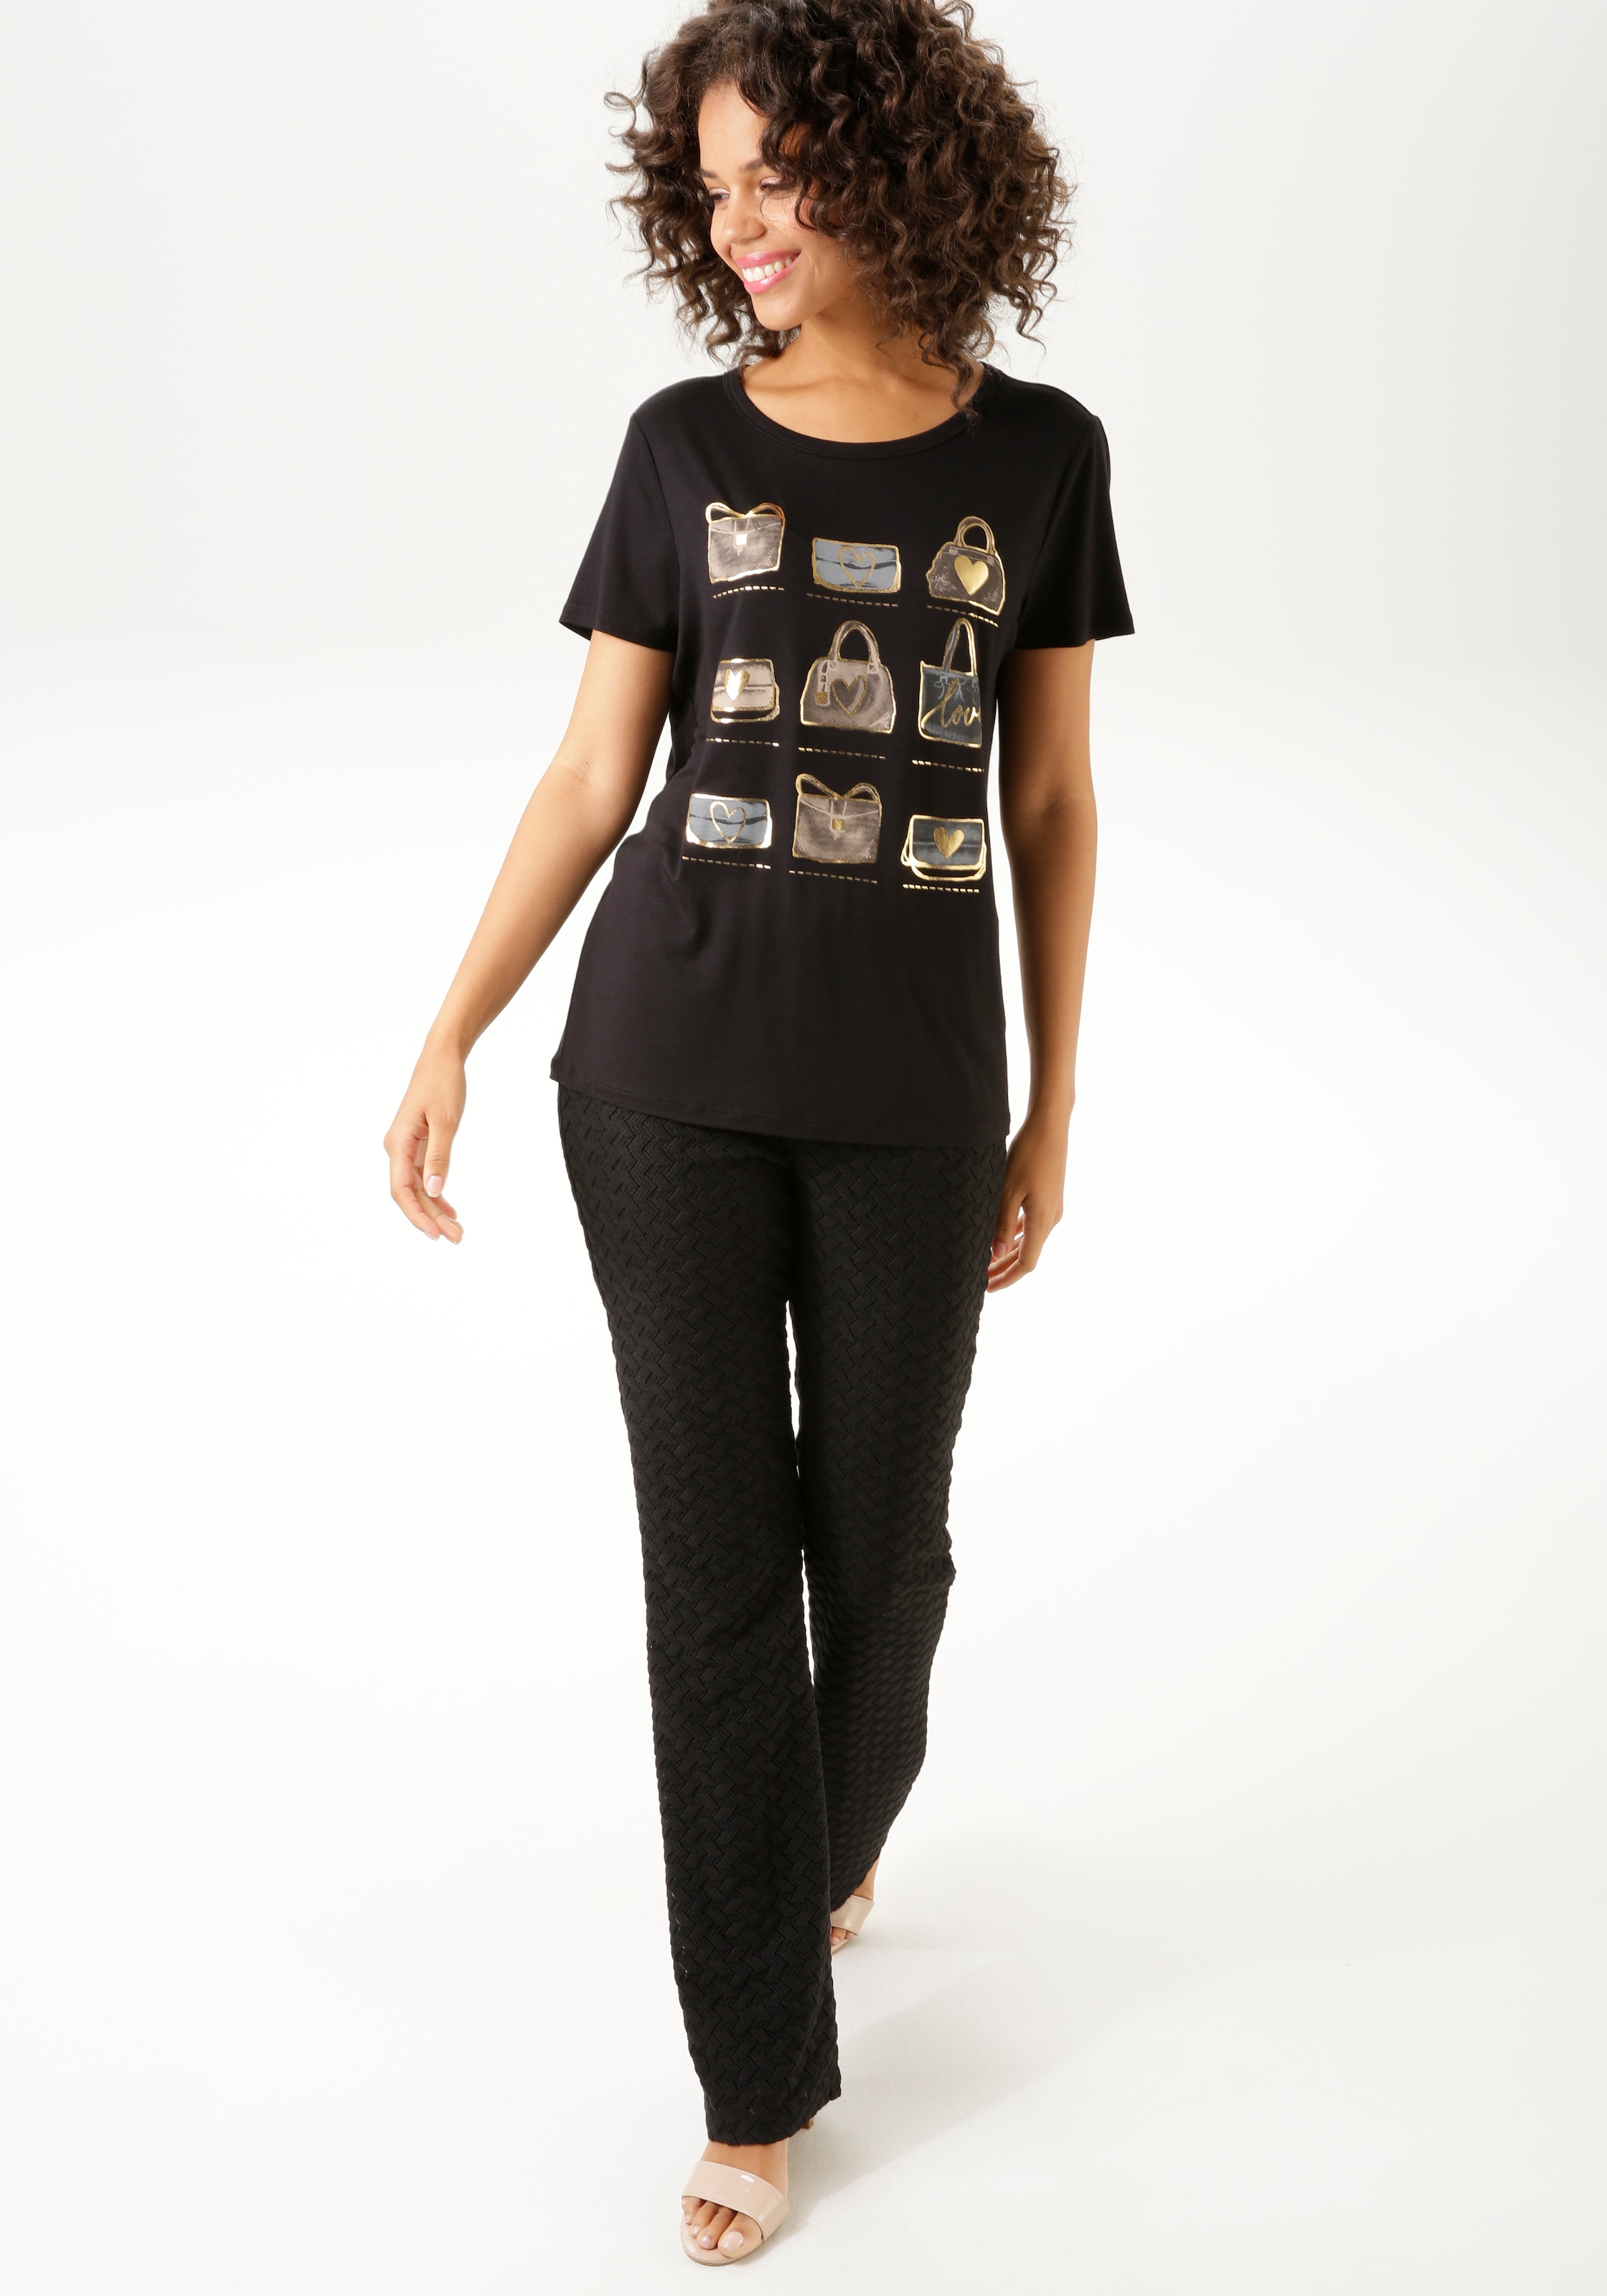 CASUAL Folienprint NEUE mit Frontdruck, glitzerndem | T-Shirt, Aniston online bestellen KOLLEKTION BAUR - teilweise